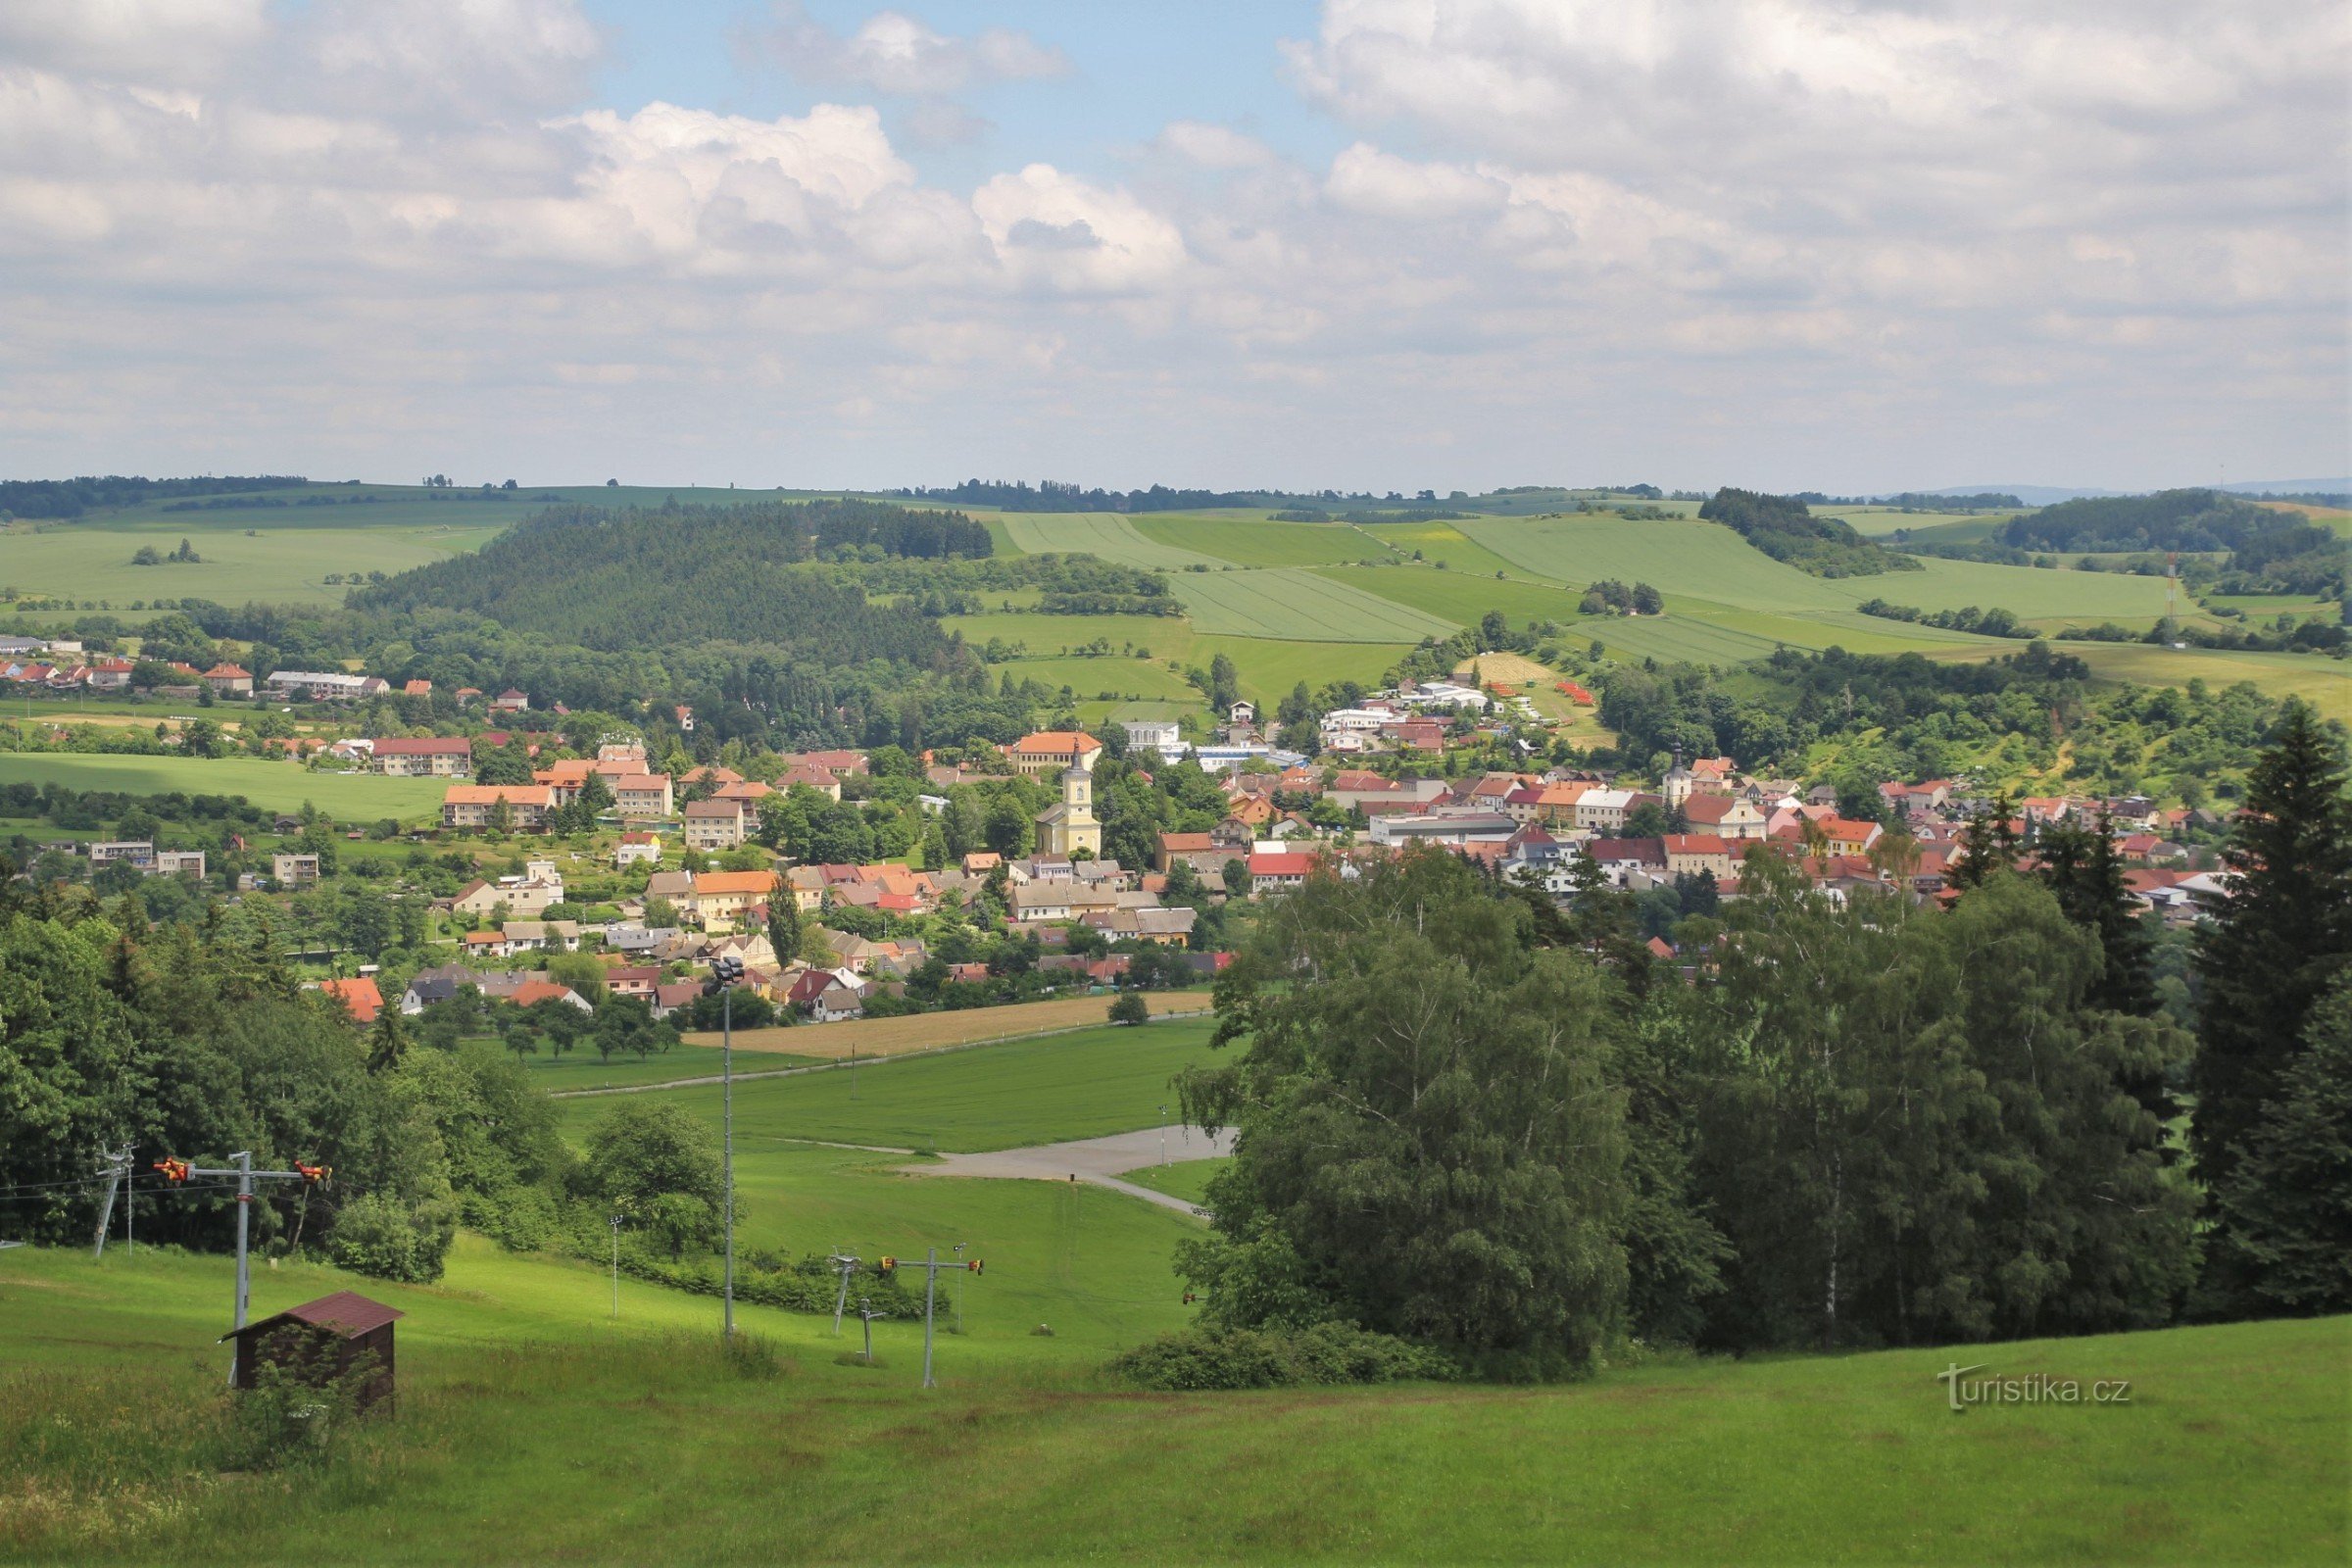 Vedere a orașului Olešnice de la turnul de observație